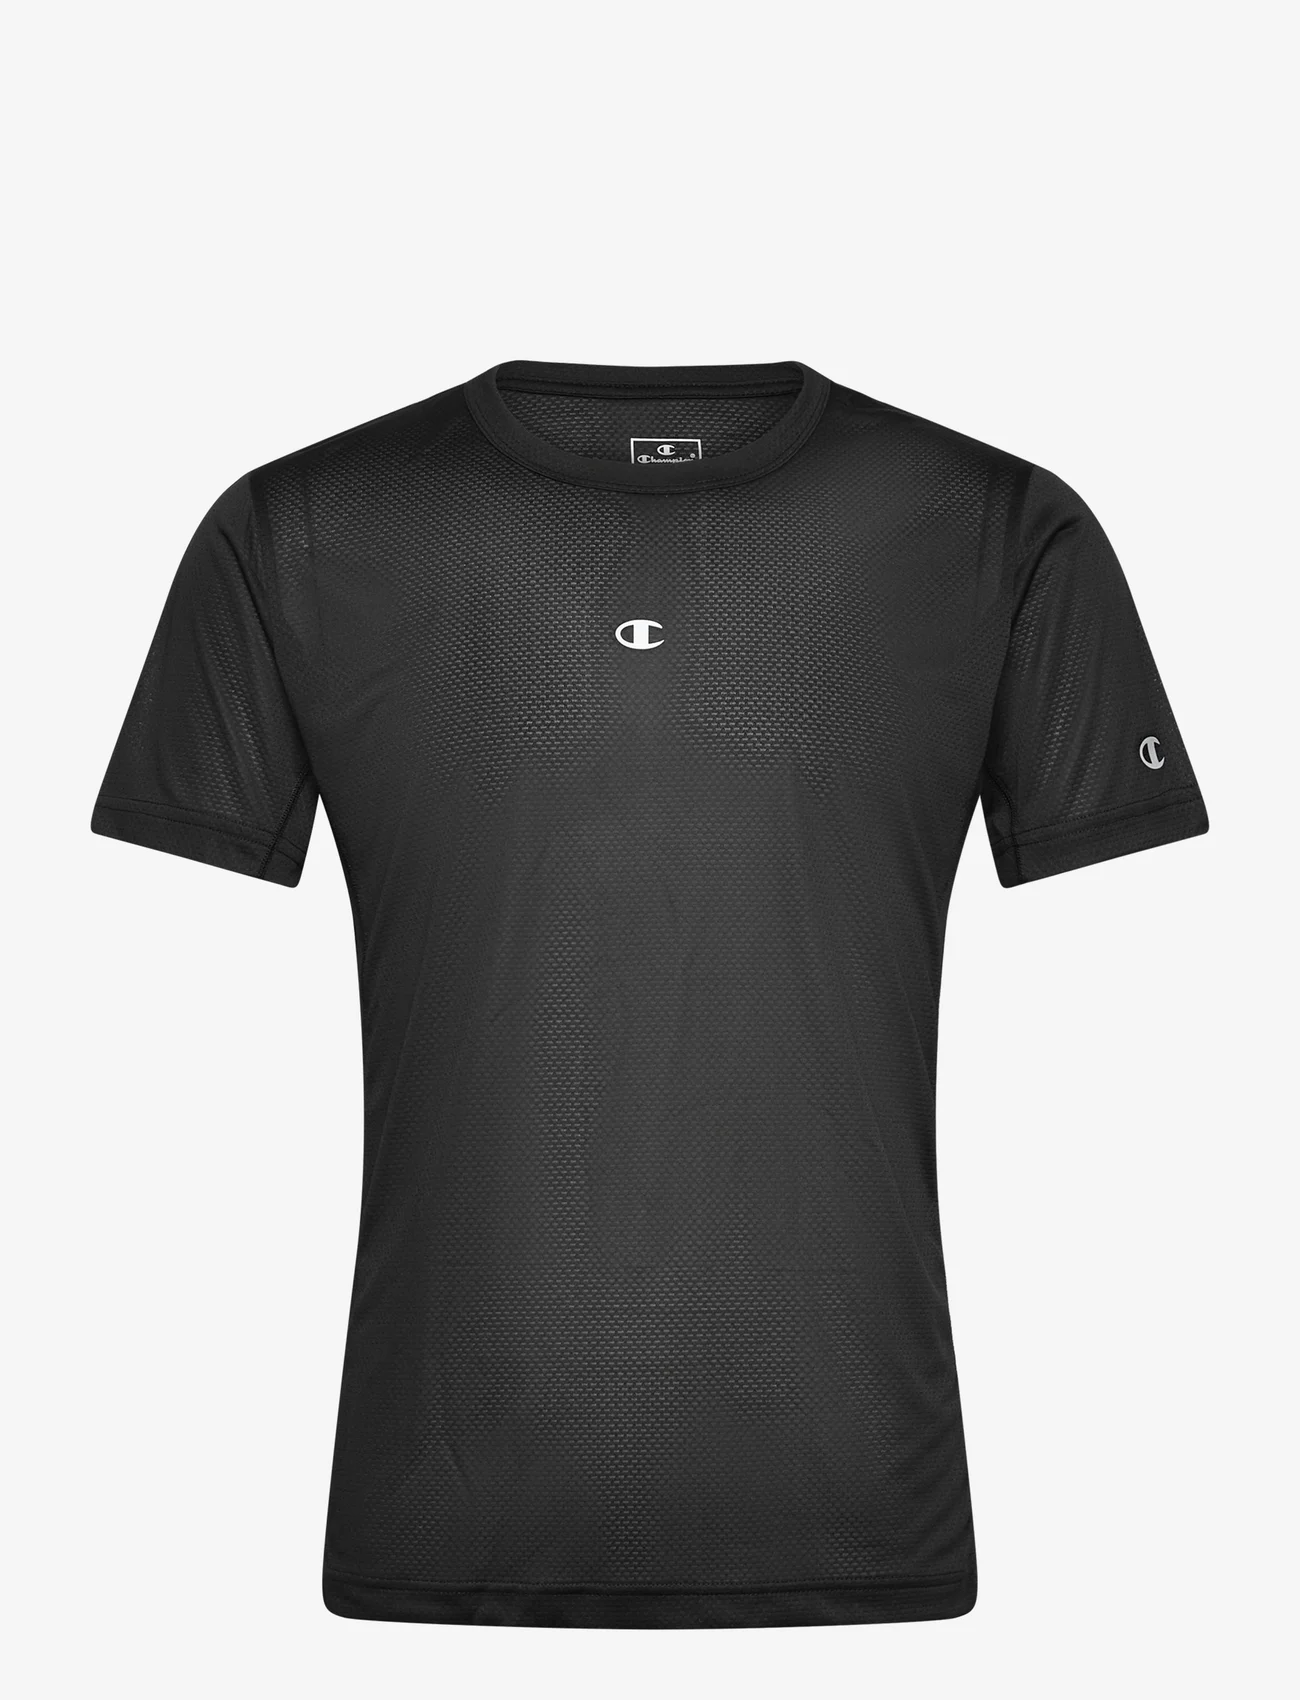 Champion - Crewneck T-Shirt - mažiausios kainos - black beauty - 0